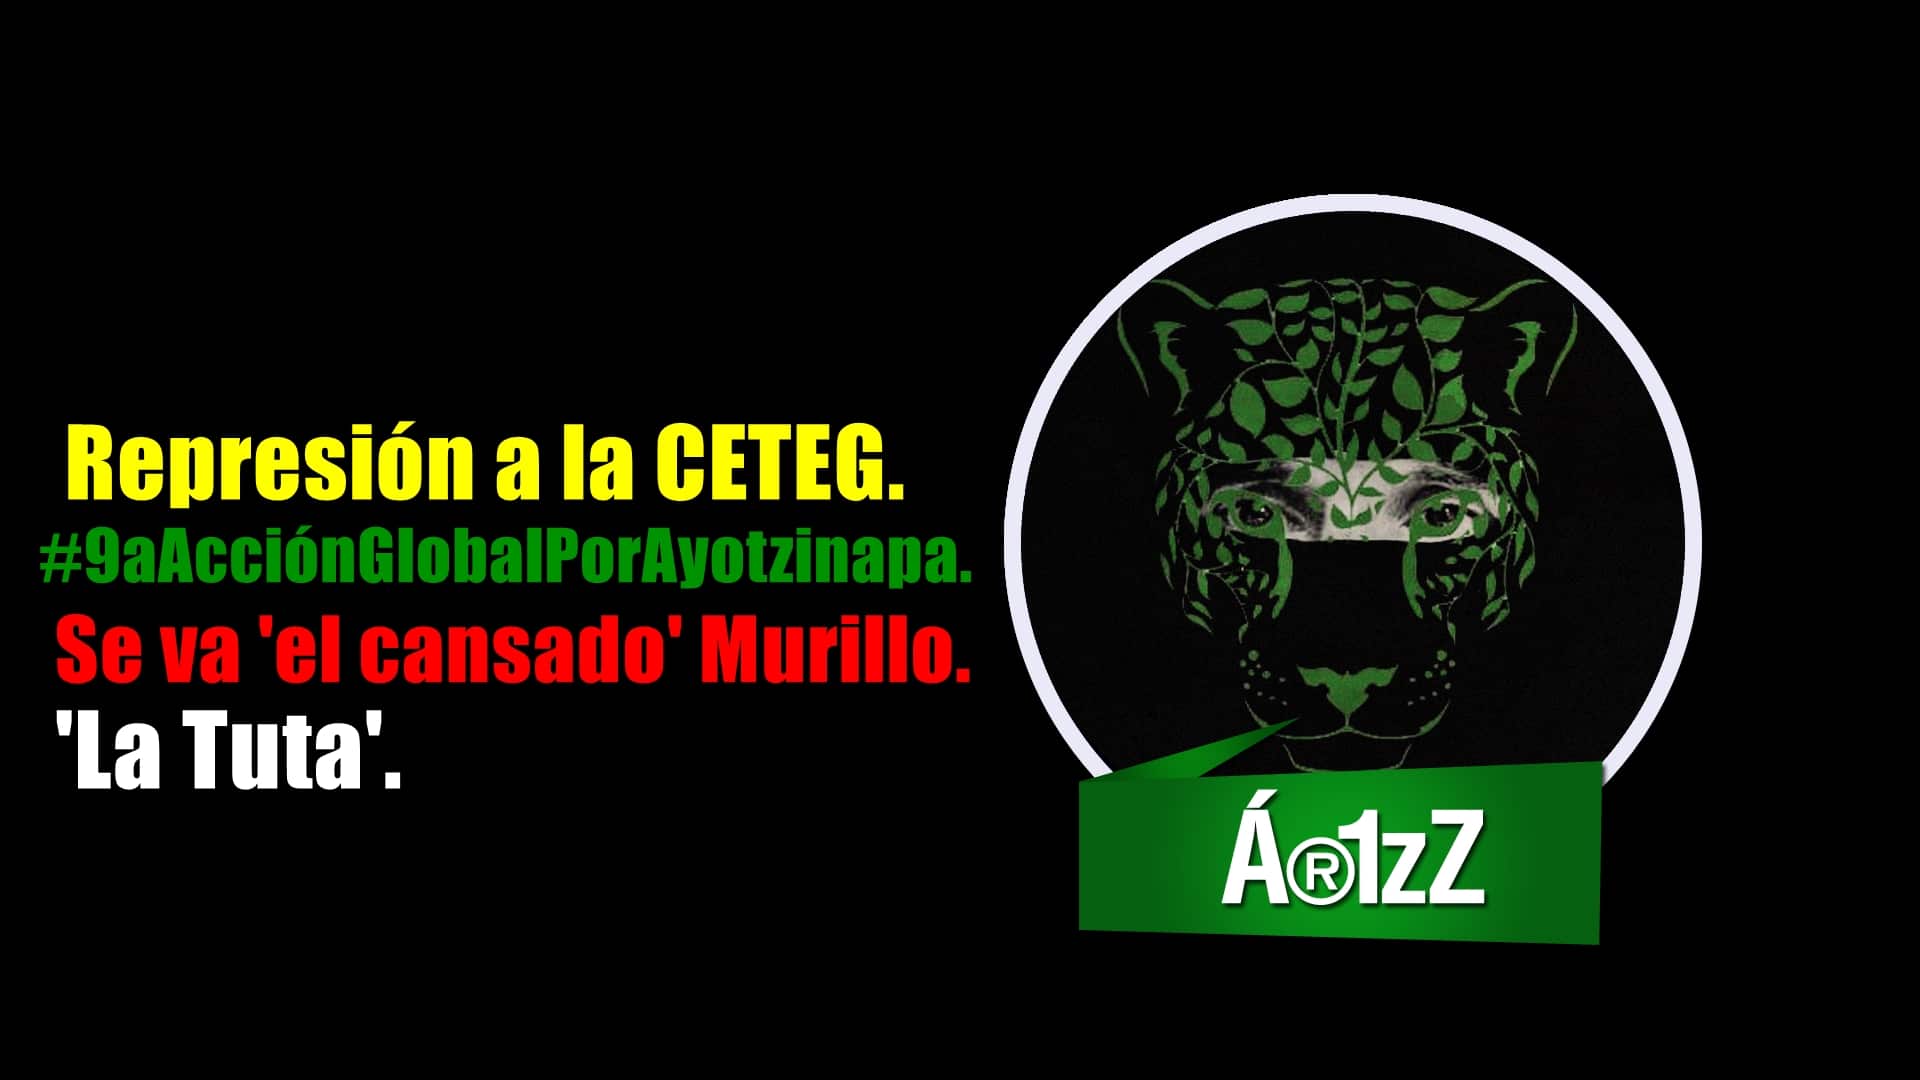 CETEG, #9aAcciónGlobalPorAyotzinapa, Murillo (a) 'el cansado' y La Tuta.